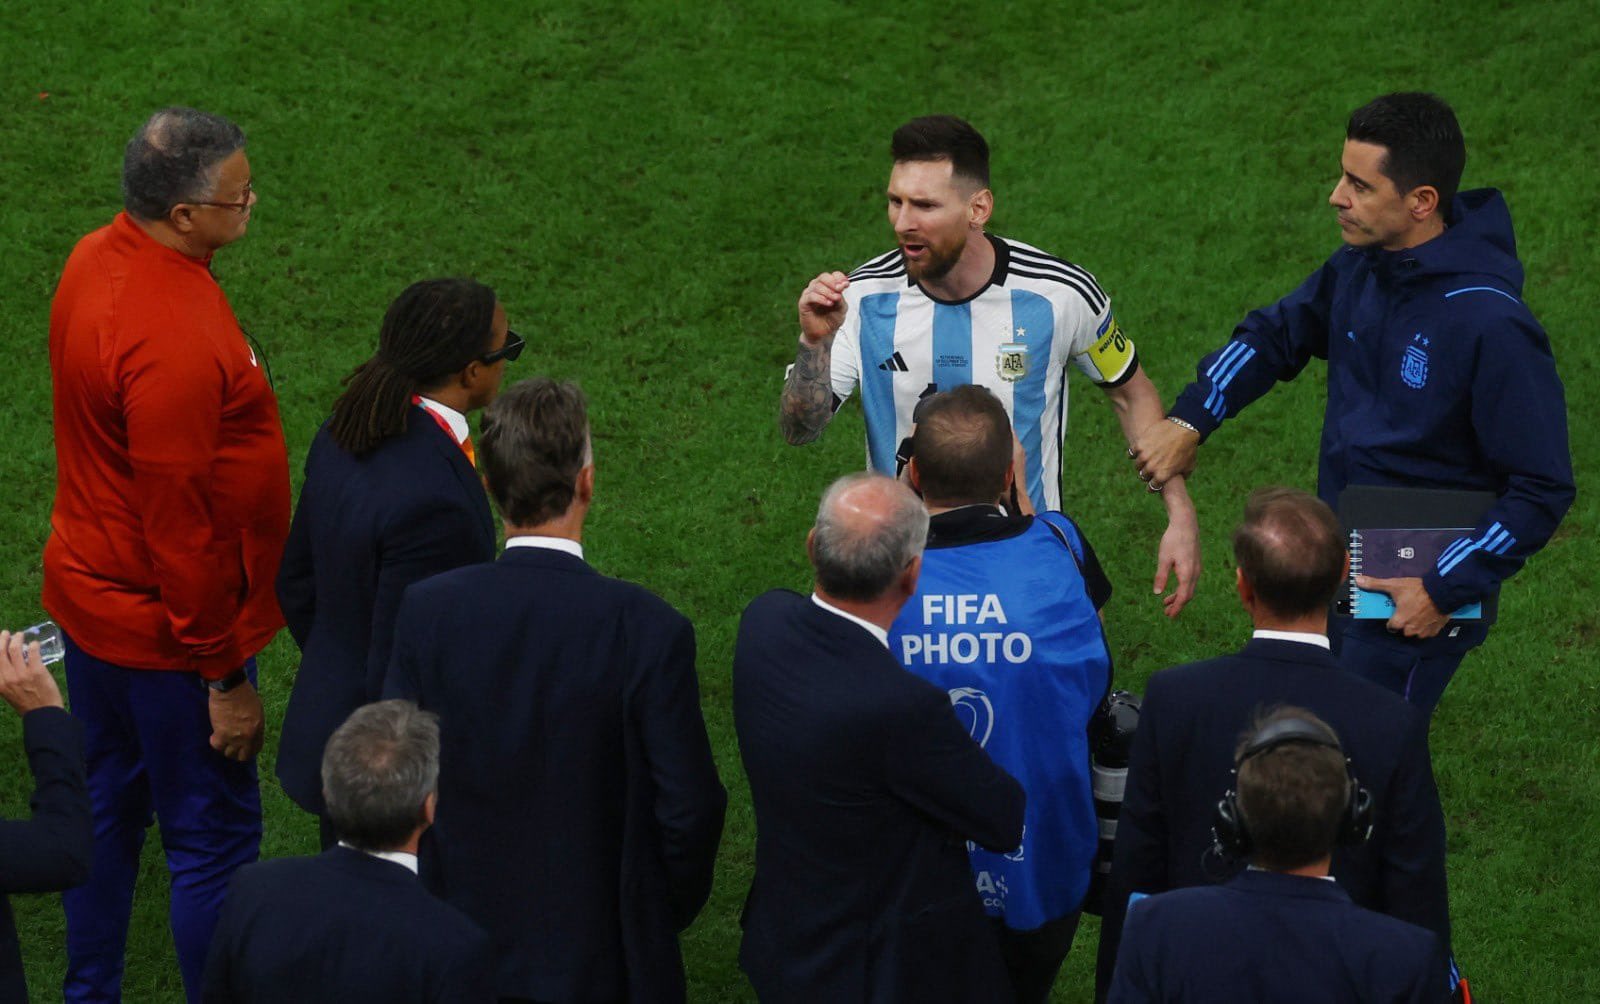 Xem hình ảnh Messi và HLV Van Gaal để thấy mối quan hệ tưởng chừng như không thể trên sân cỏ. Cả hai đã có những khoảnh khắc đáng nhớ và tình cảm vô cùng đáng trân trọng.